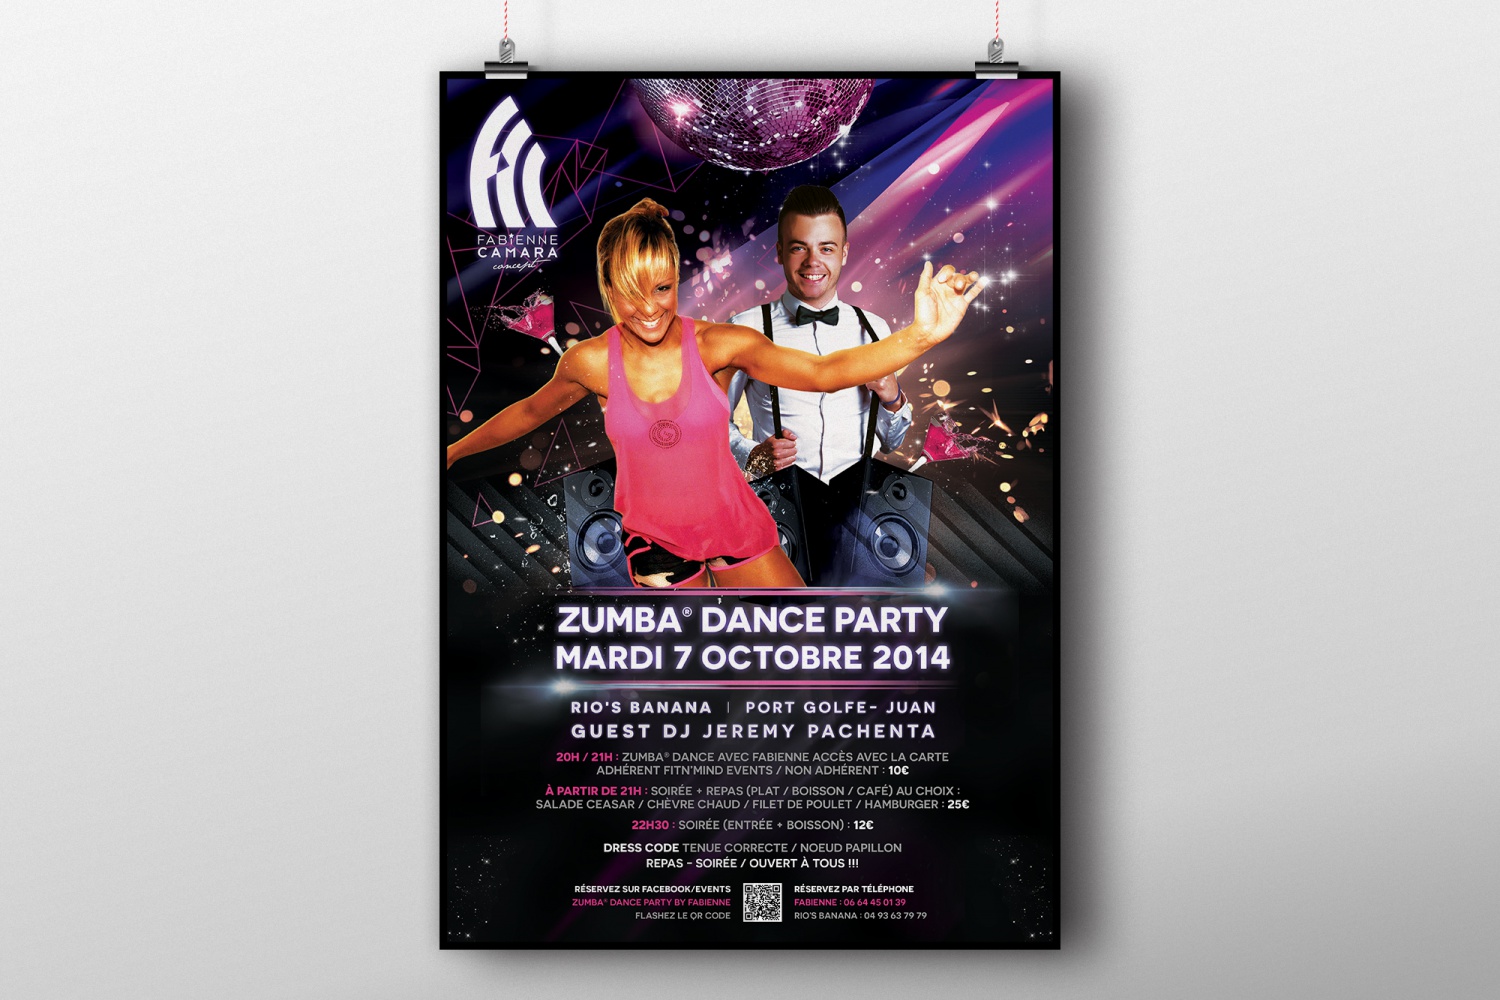 Zumba® Dance Party by Fabienne